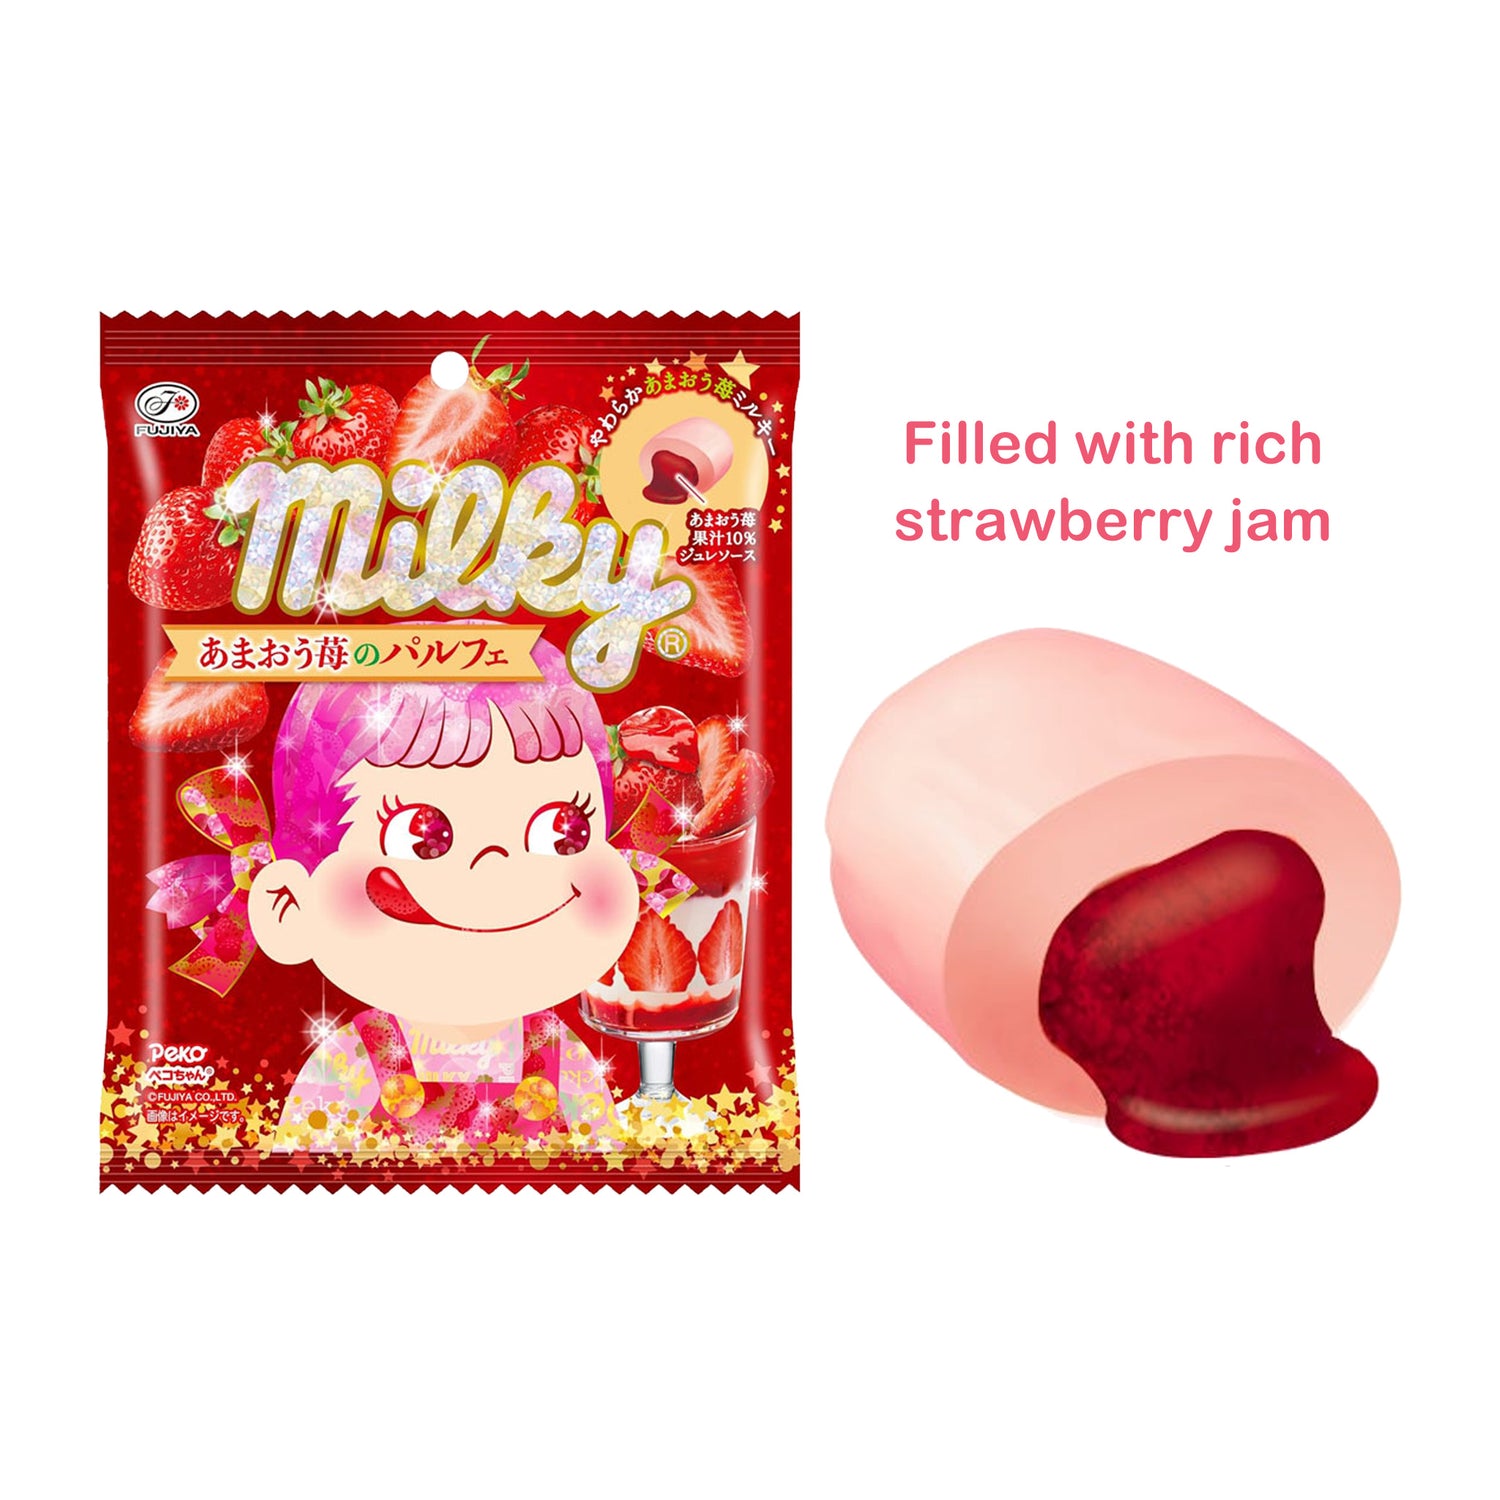 FUJIYA Milky Amaou Strawberry Parfait